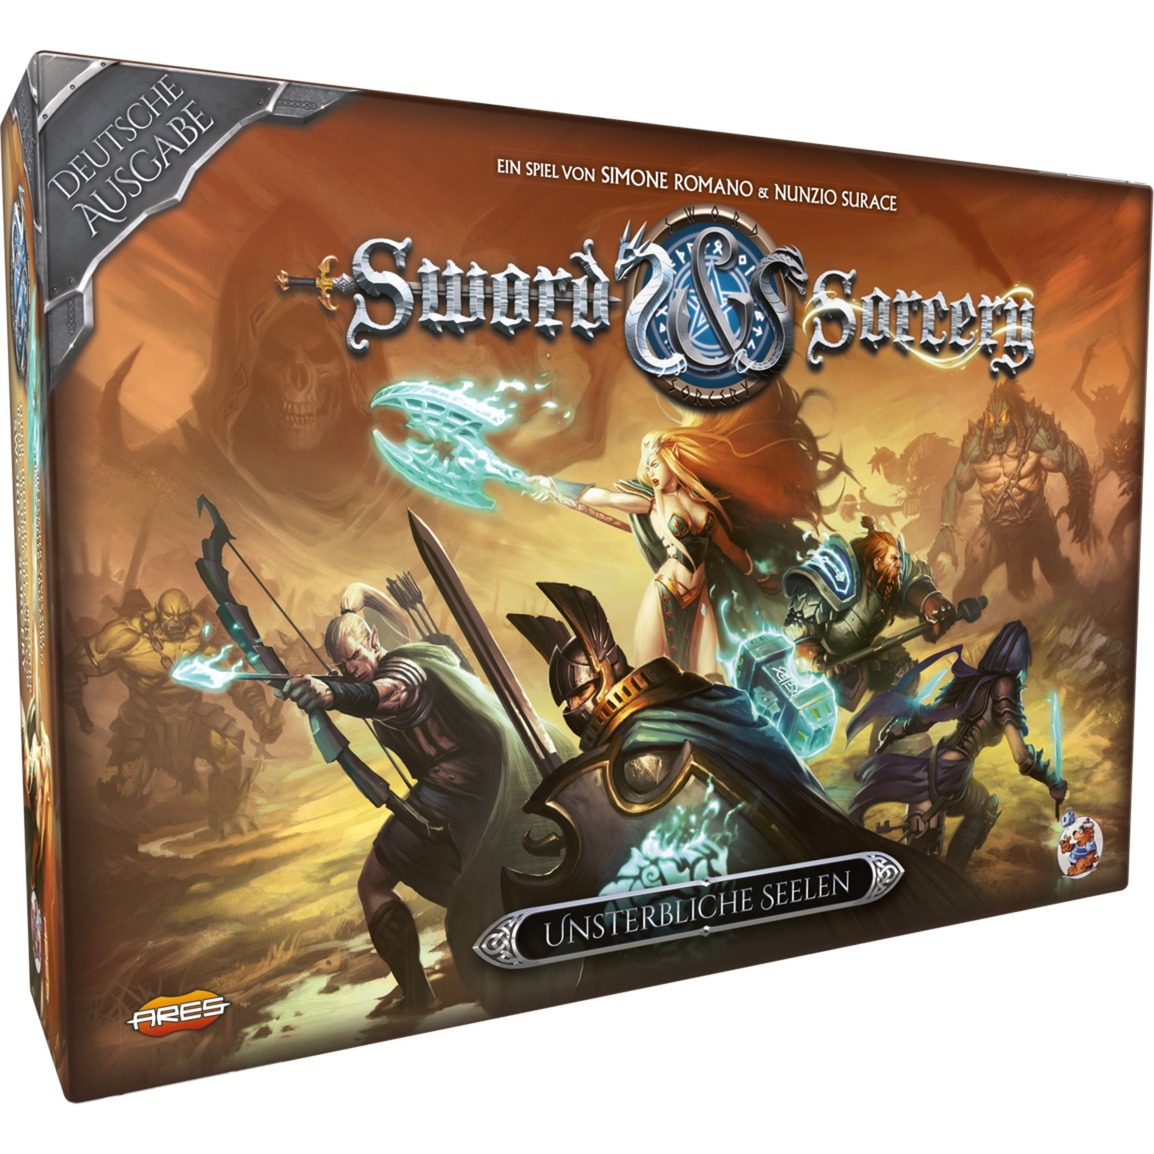 Image of Alternate - Sword & Sorcery, Brettspiel online einkaufen bei Alternate